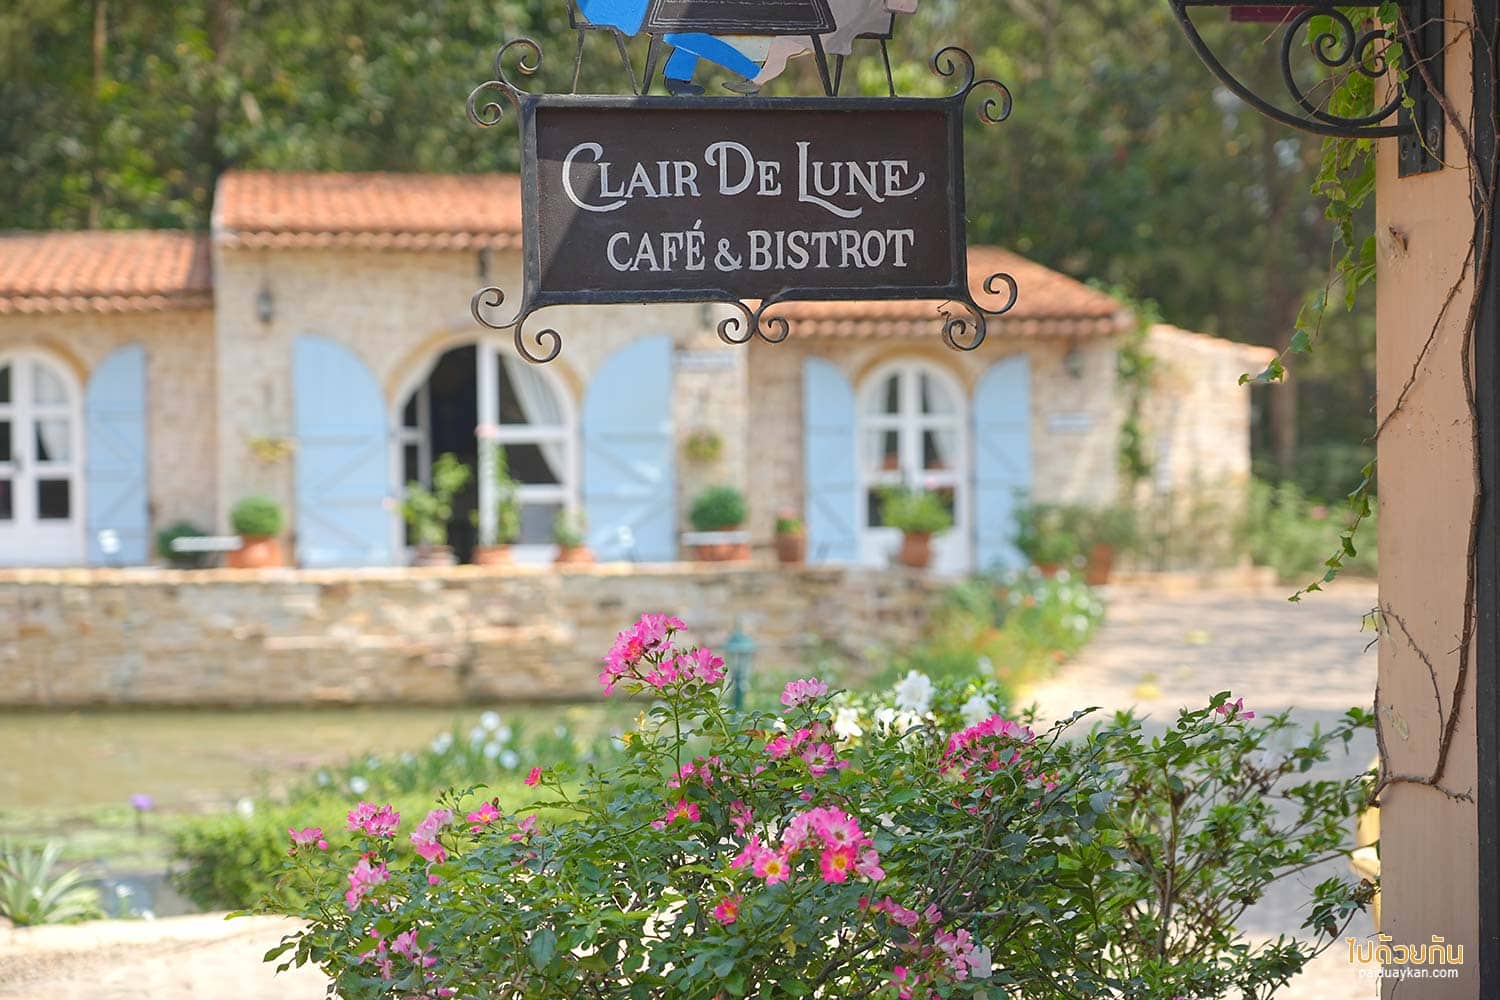 Clair de Lune Café and Bistro